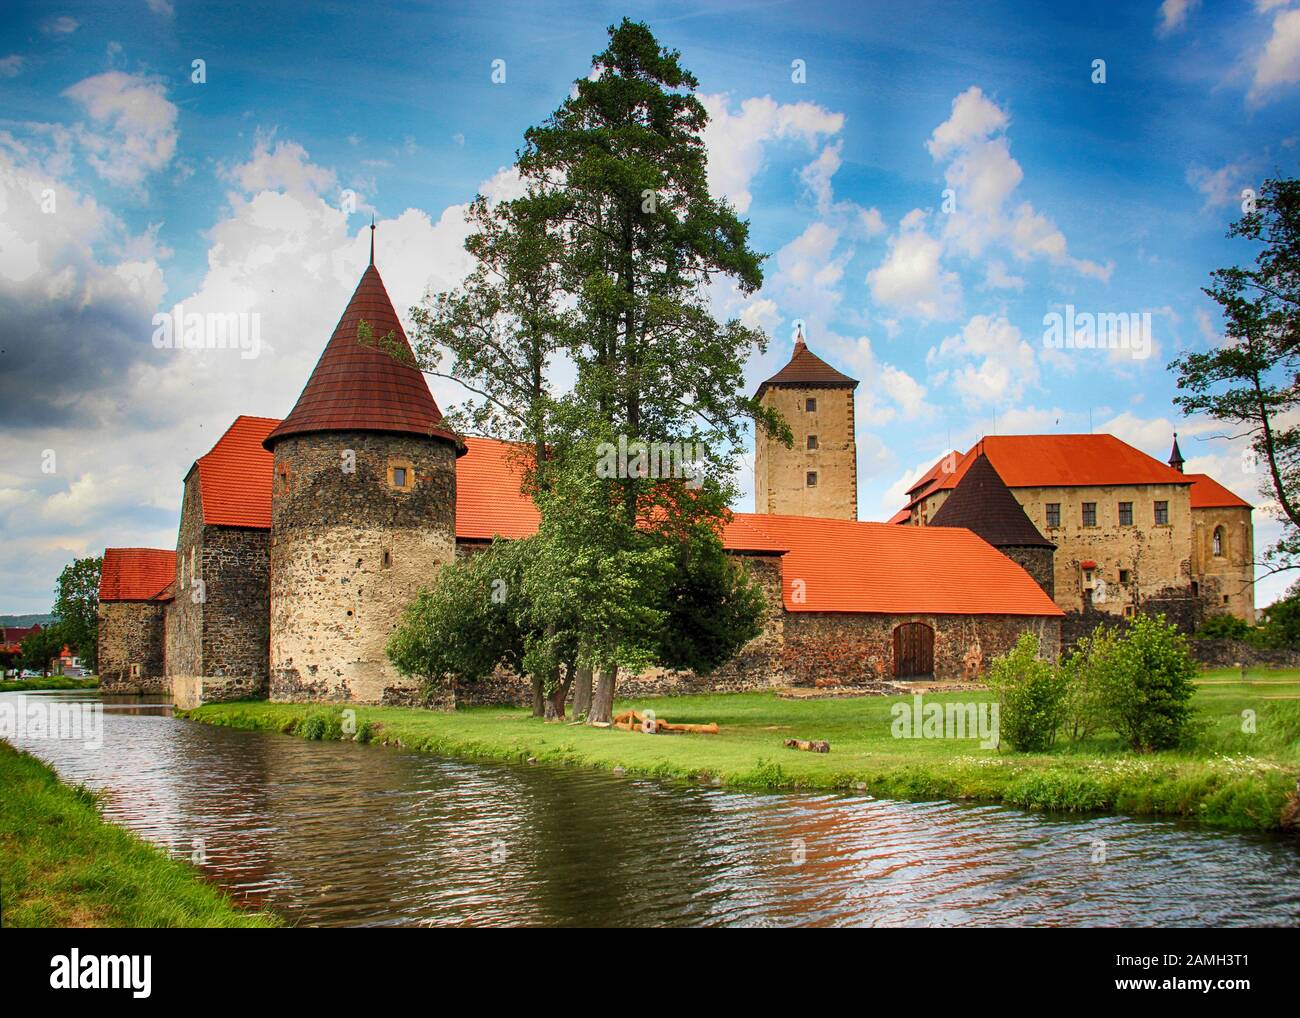 Le château d'eau de Svihov est situé dans la région de Pilsen, en République tchèque, en Europe. Il y a un canal d'eau autour du château de pierre Banque D'Images